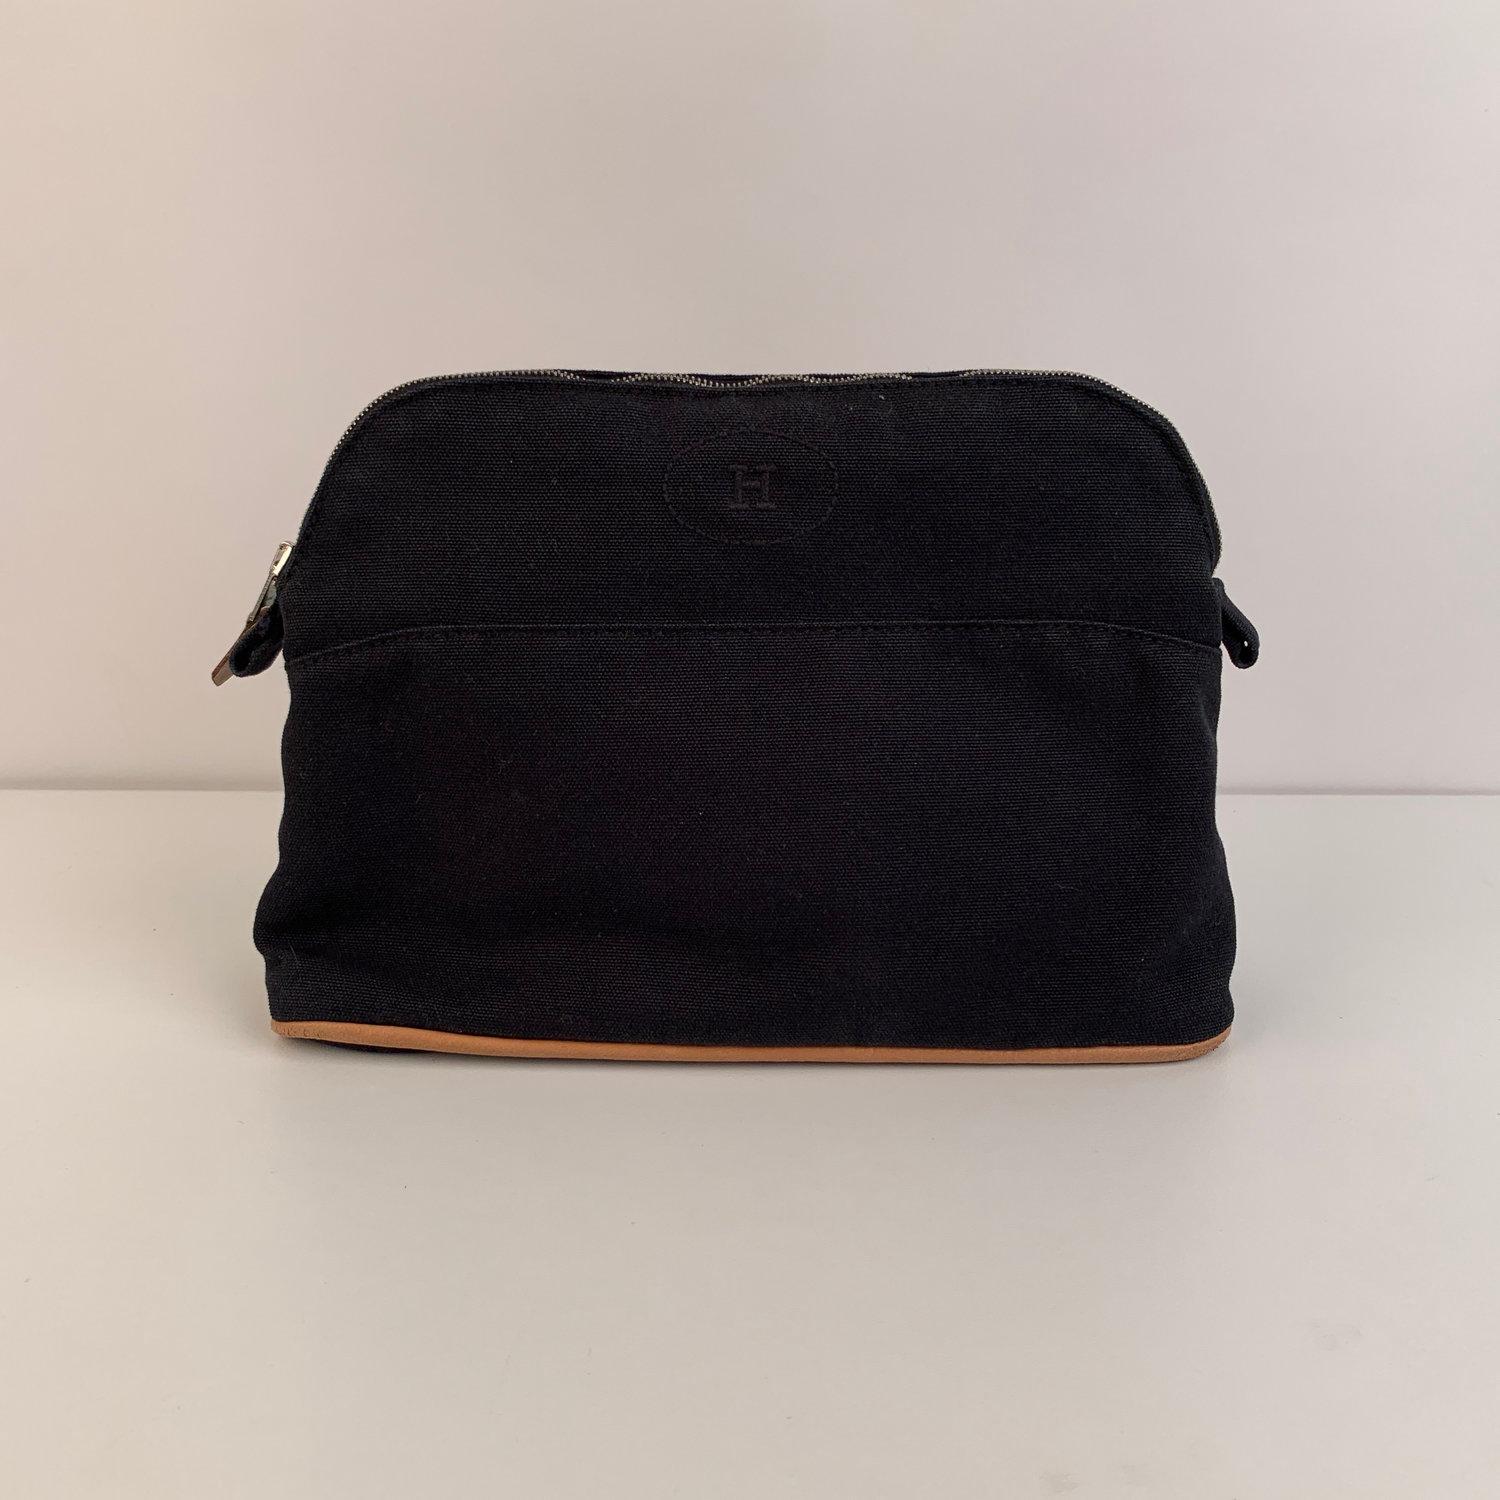 Hermes Paris Black Cotton Canvas Bolide Travel Case Cosmetic Bag 5